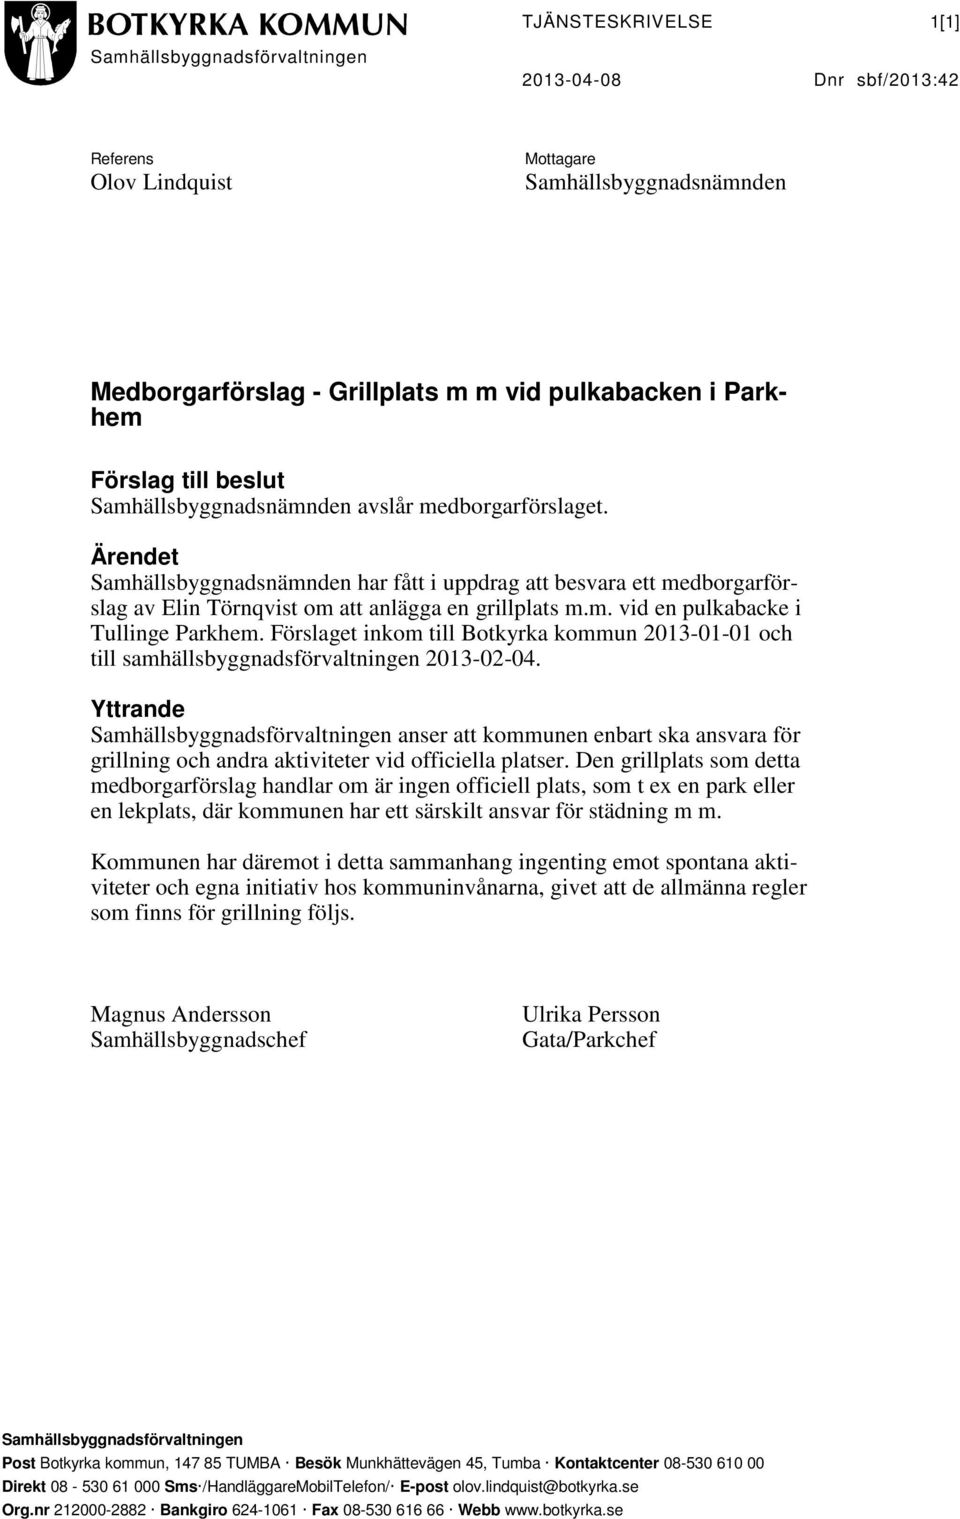 Förslaget inkom till Botkyrka kommun 2013-01-01 och till samhällsbyggnadsförvaltningen 2013-02-04.